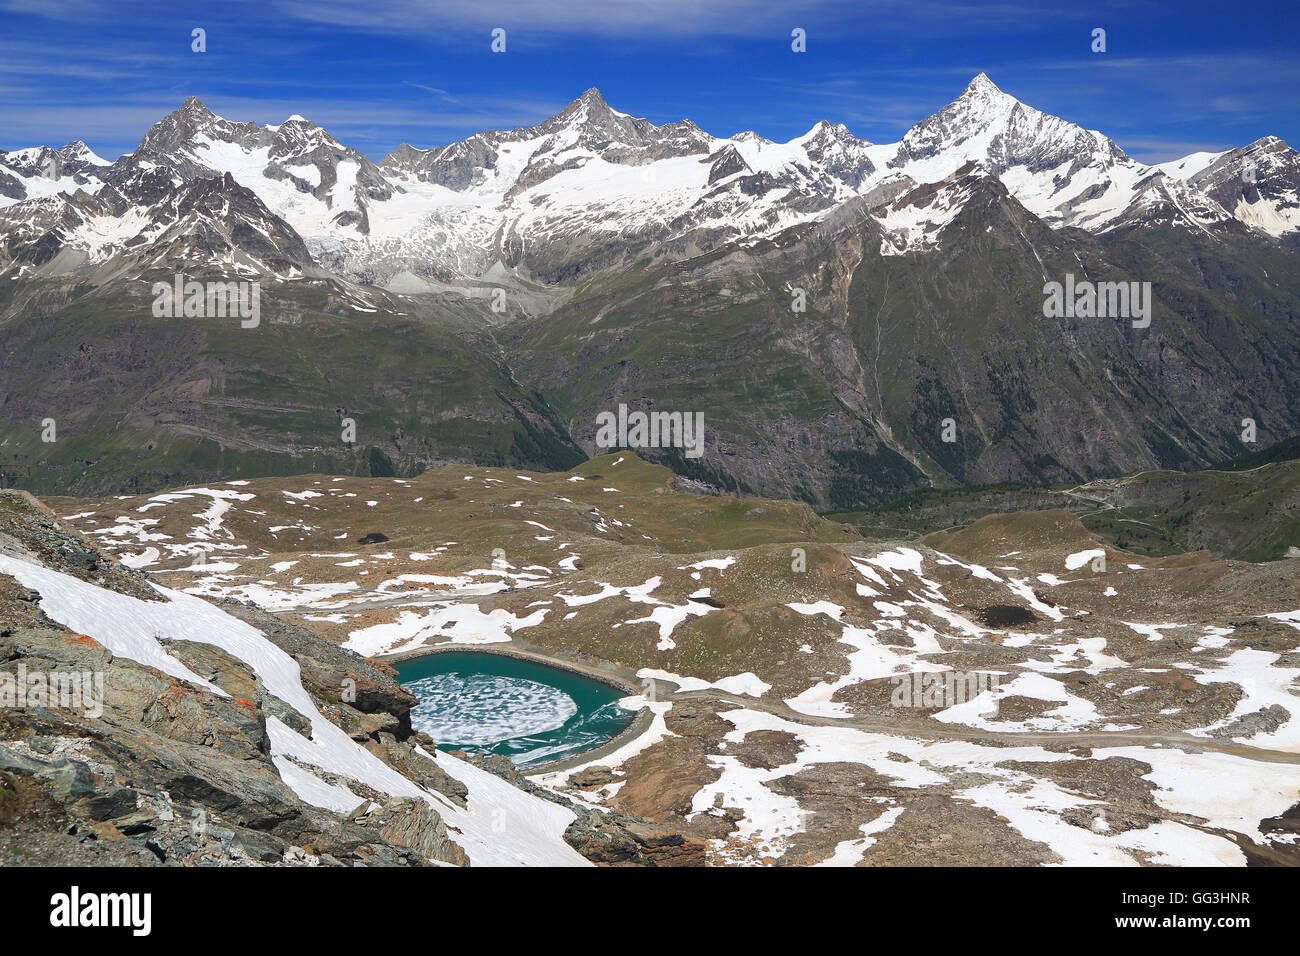 Lago alpino y montañas con nieve, Suiza Foto de stock